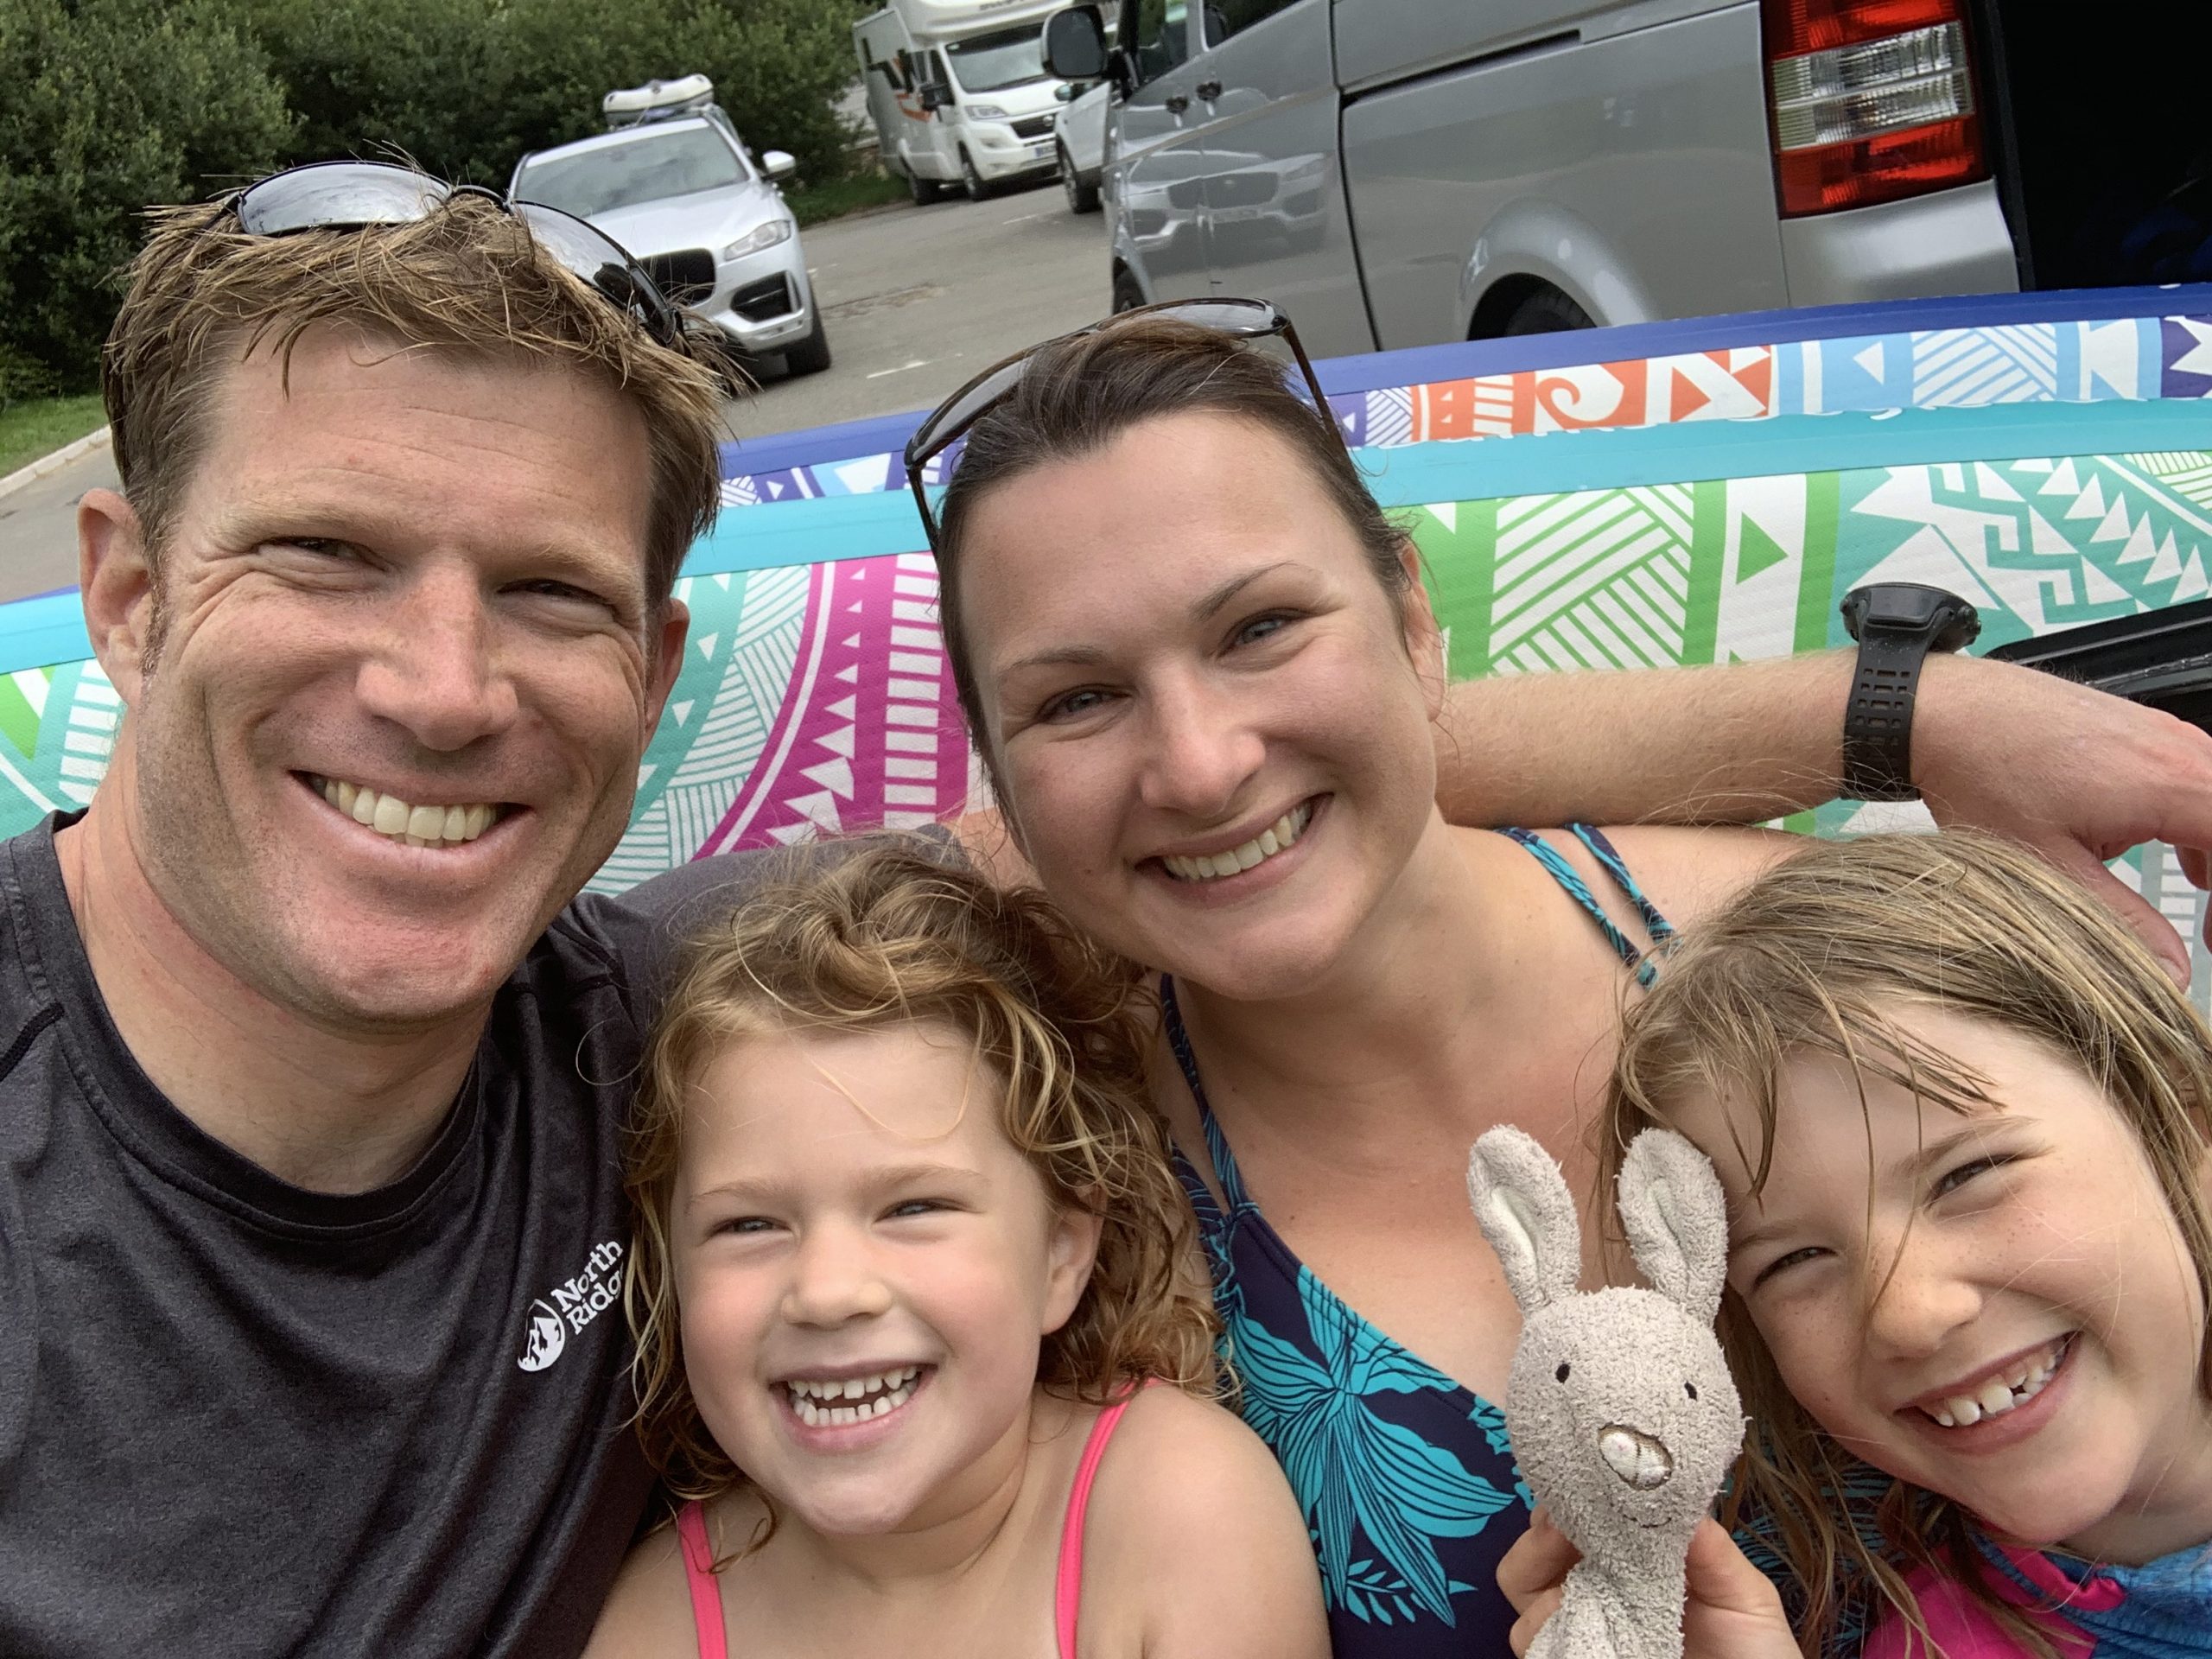 Tin Box Traveller family: Summer travel plans 2020